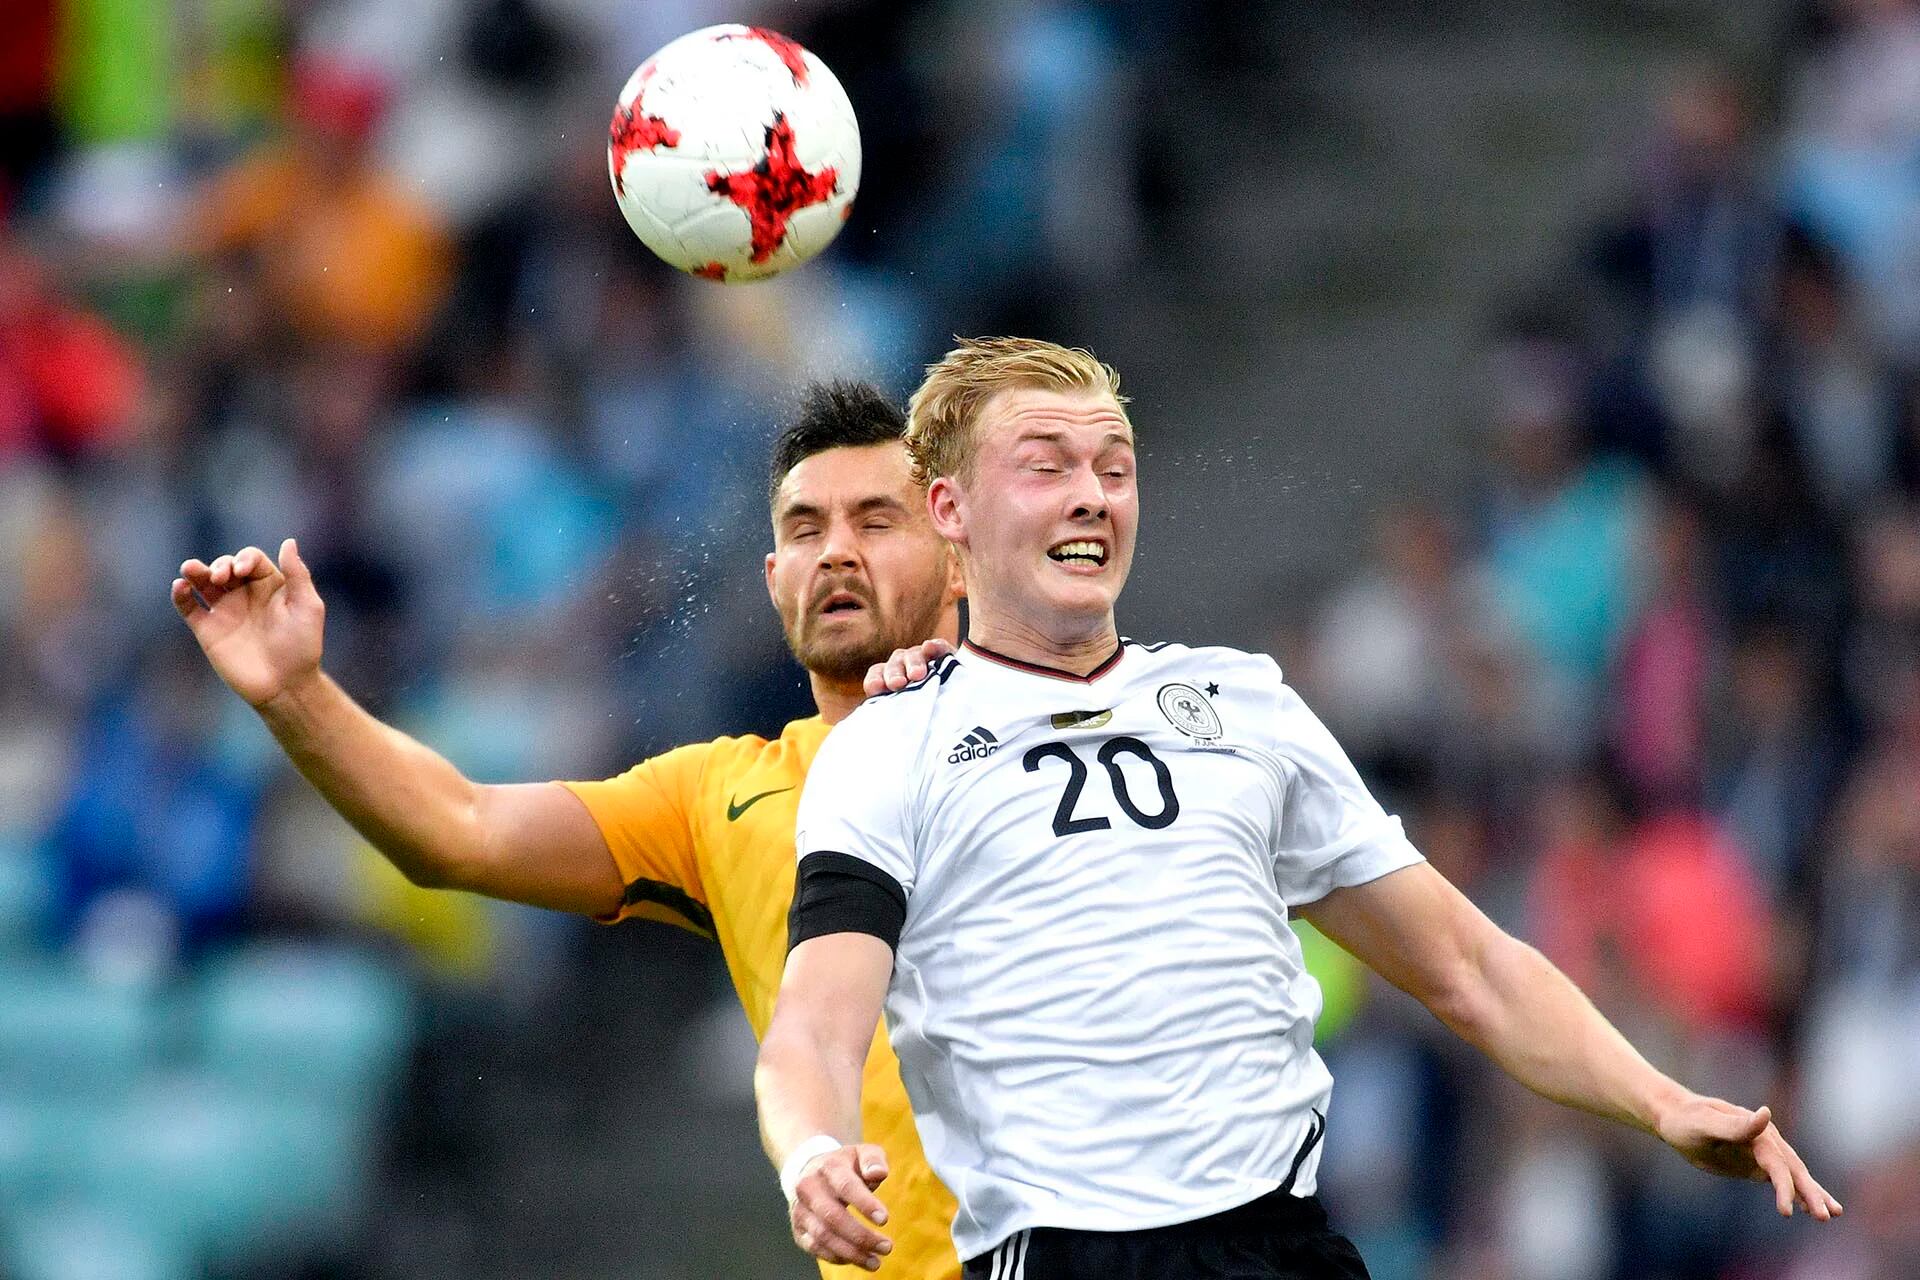 El alemán Julian Brandt disputa el balón con el australiano Bailey Wright durante el partido entre ambas selecciones por la Copa Confederaciones que se juega en Rusia